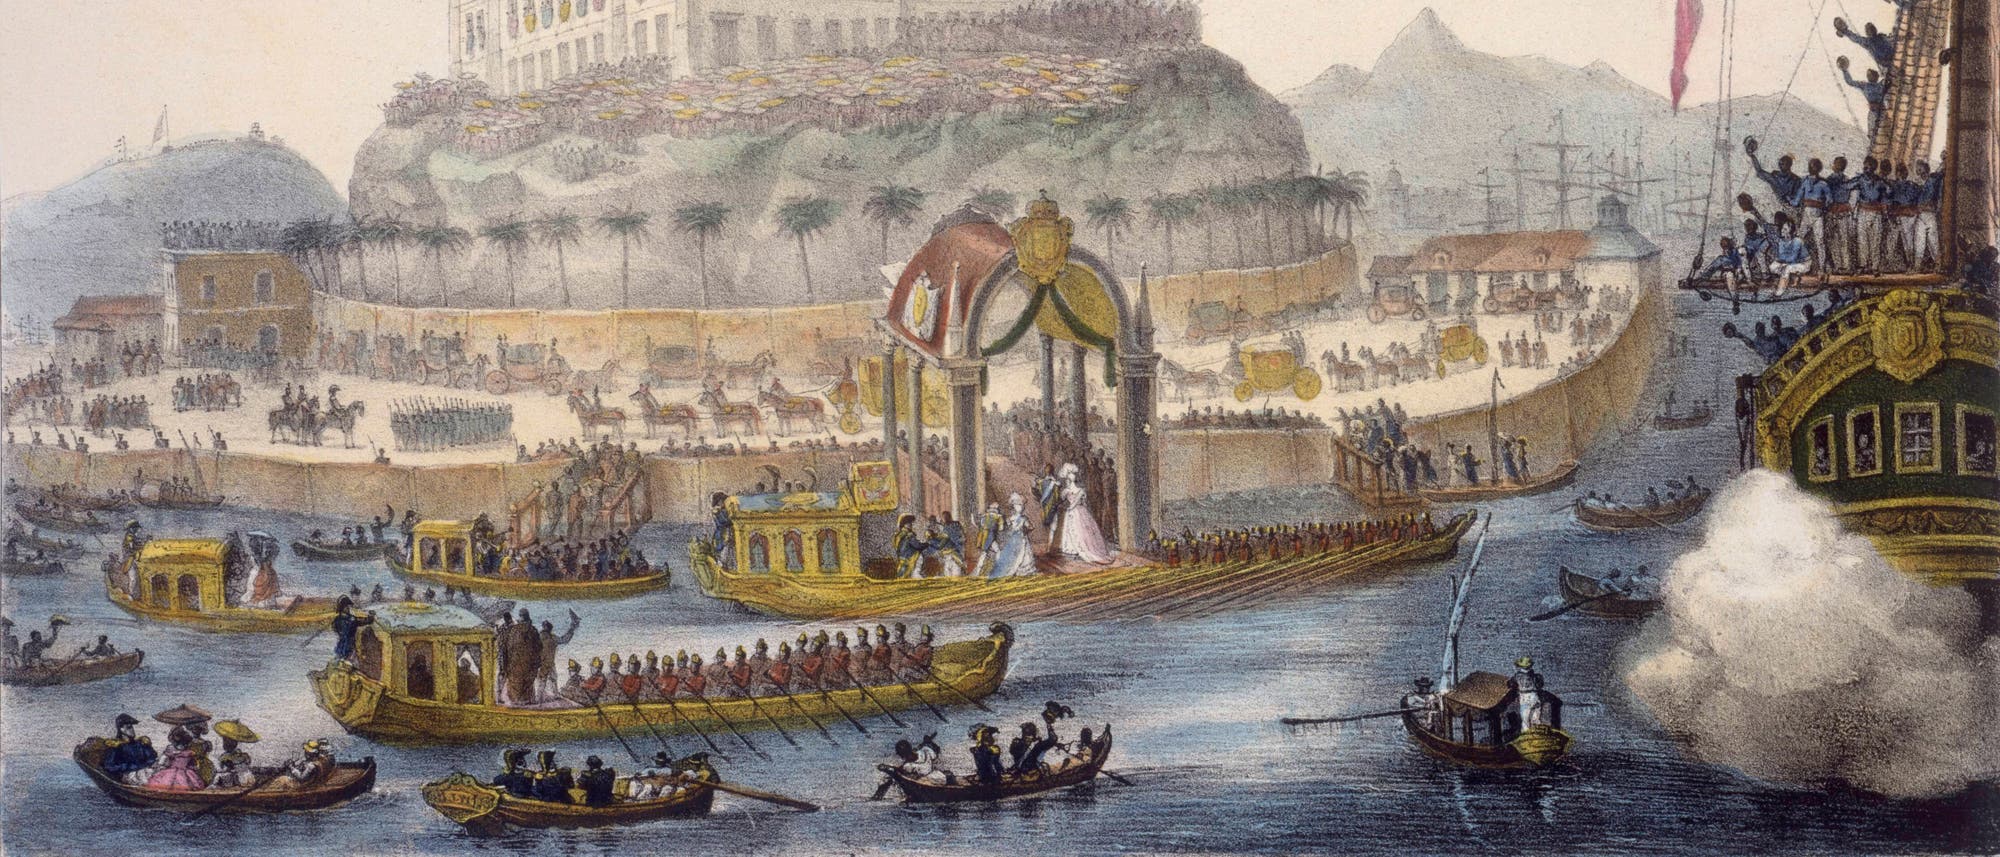 Kolorierte Lithographie, die die Ankunft der Habsburgerin Leopoldine auf Schiffen in Rio de Janeiro zeigt.